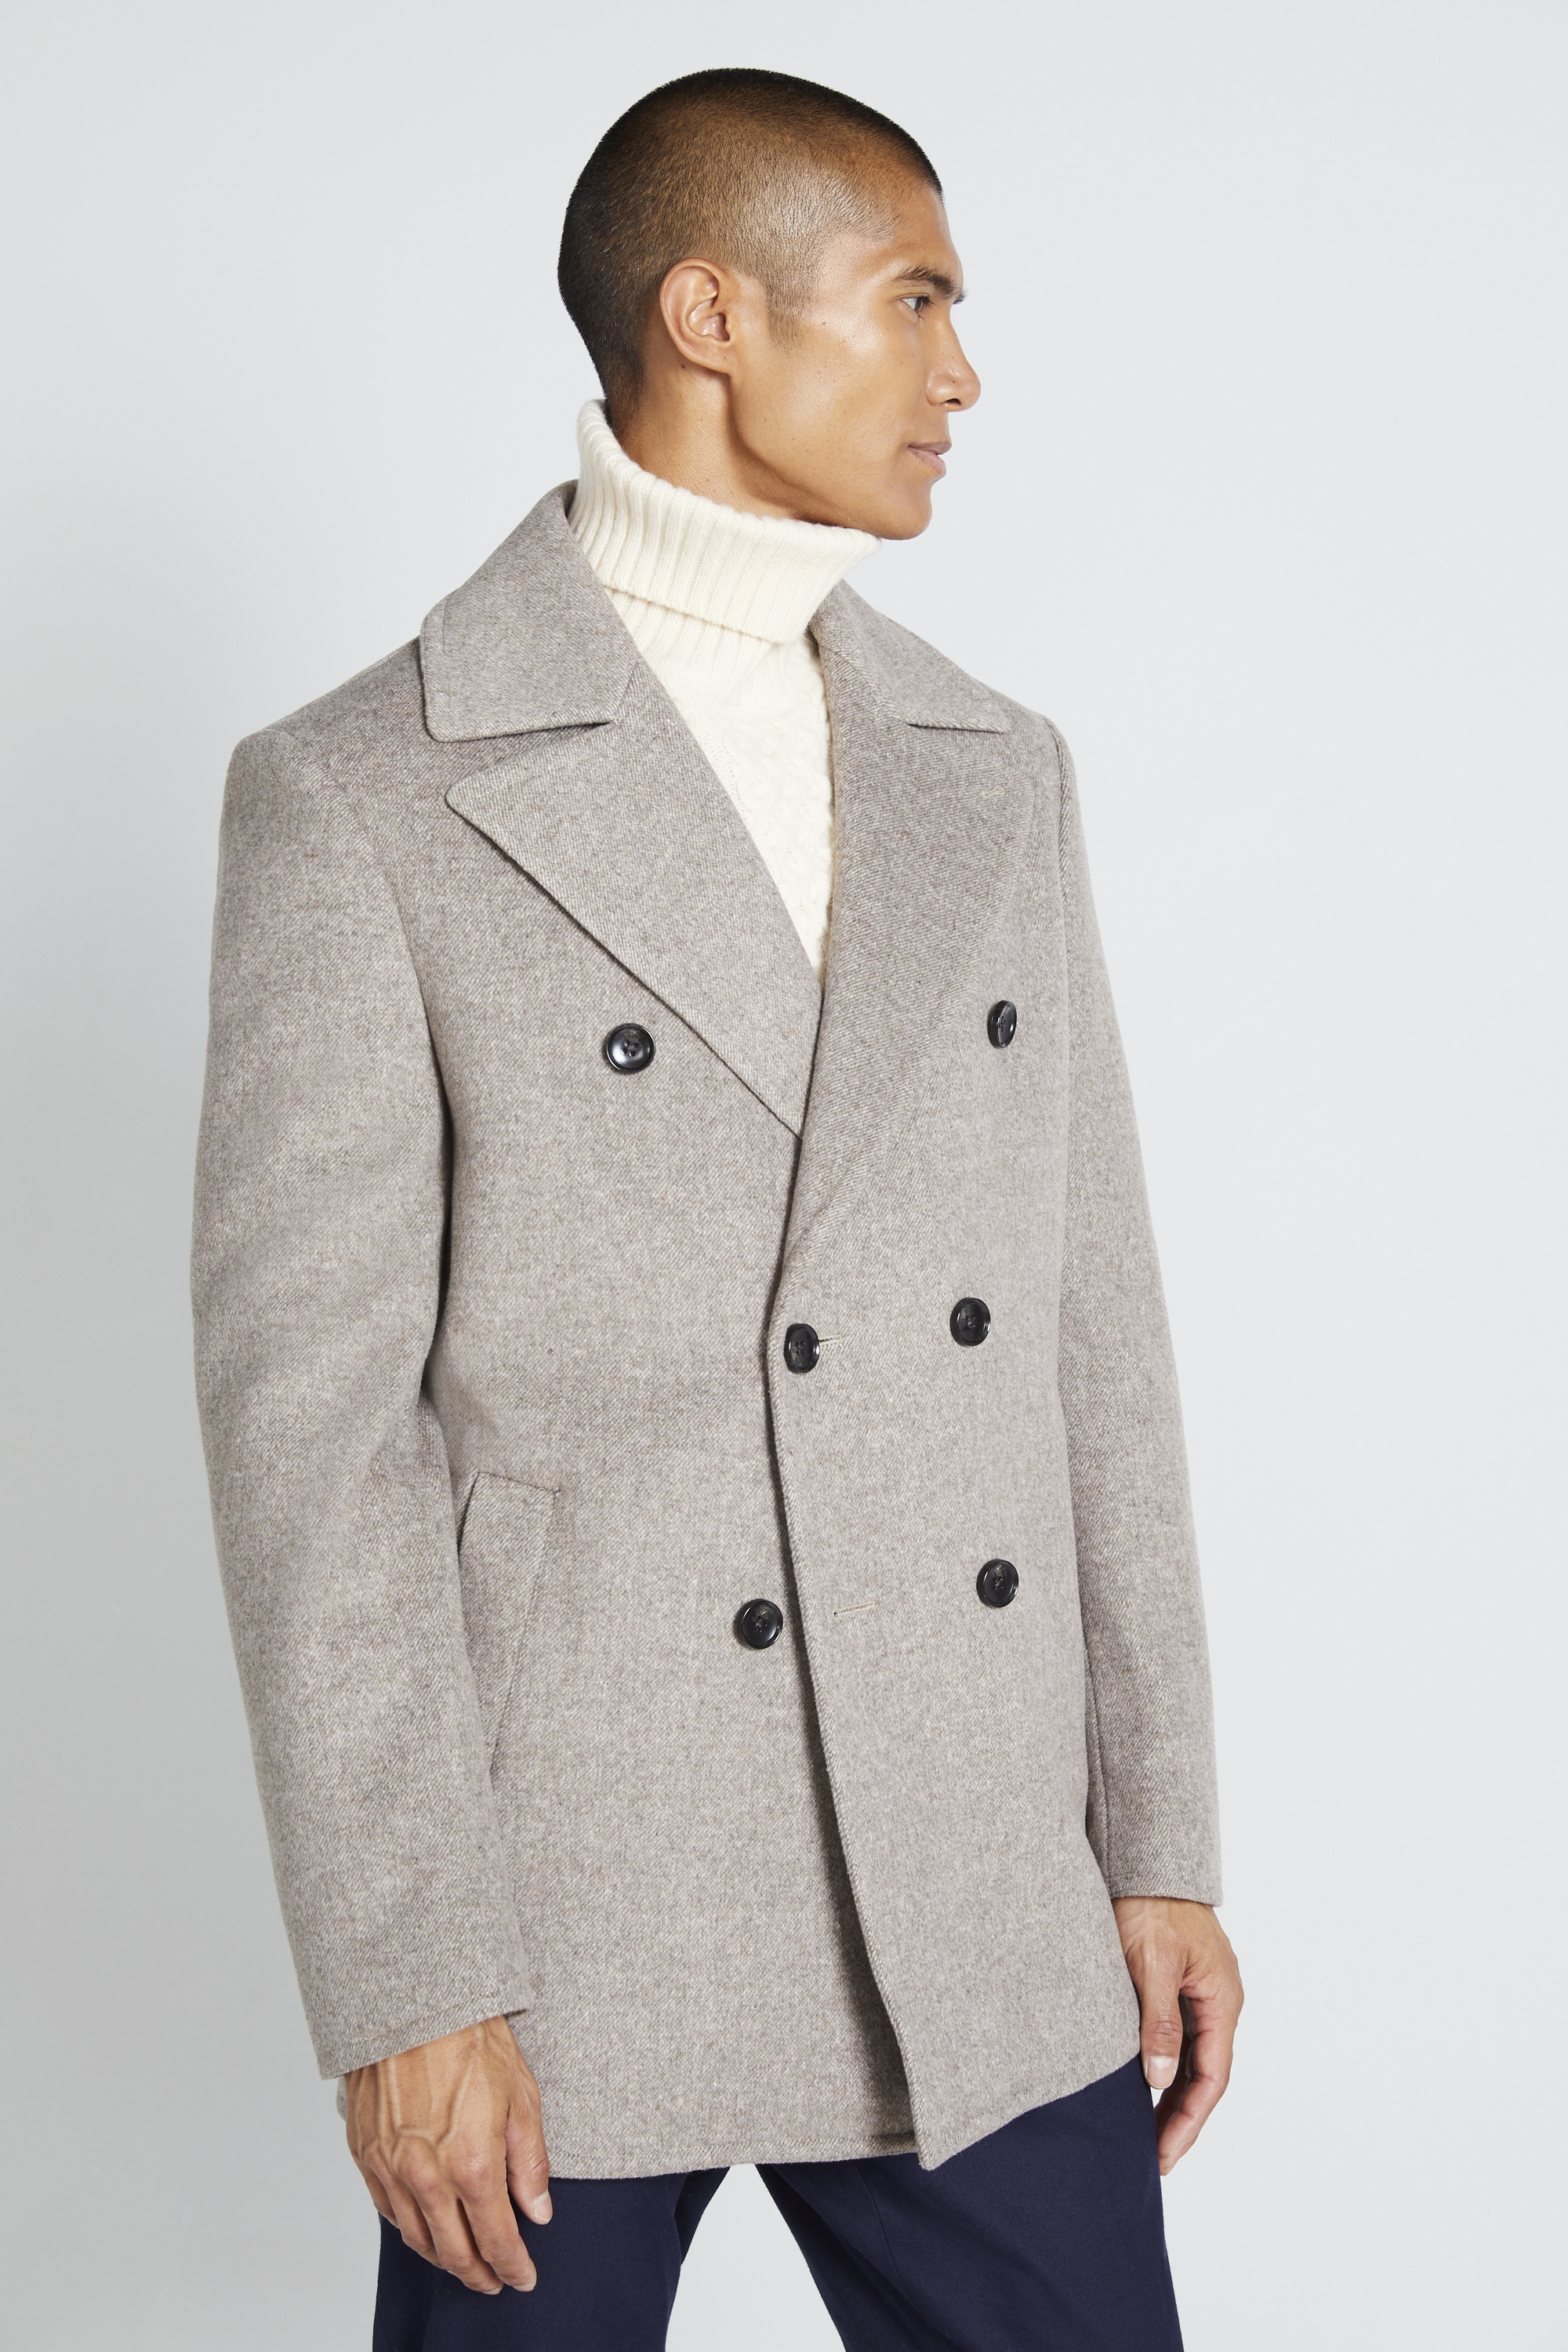 mens grey wool pea coat